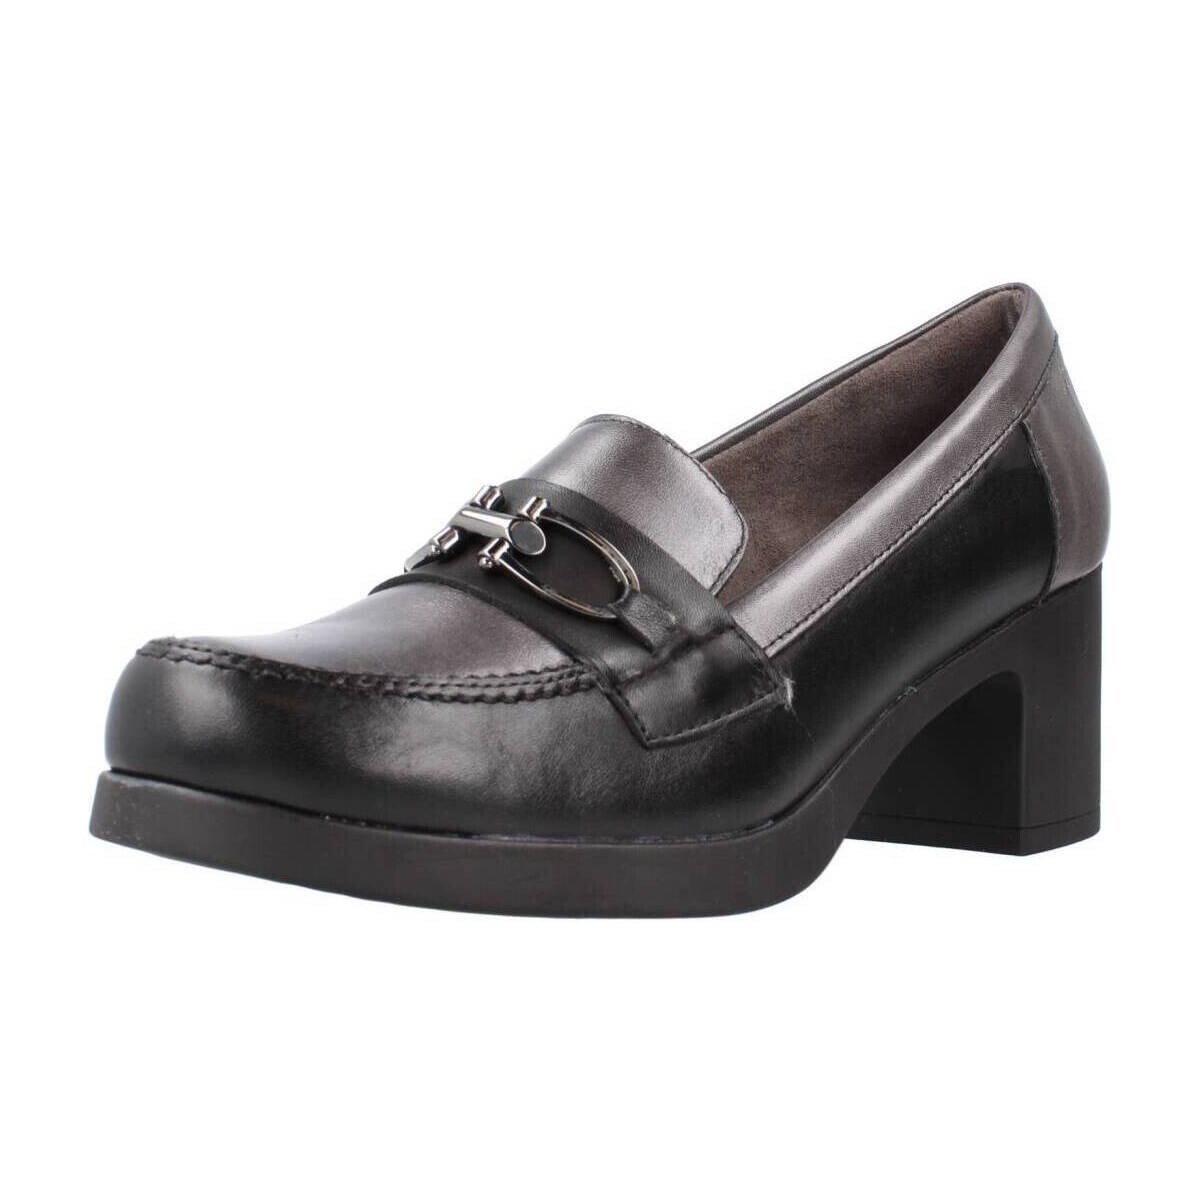 Παπούτσια Γυναίκα Μοκασσίνια Pitillos 3700P Black